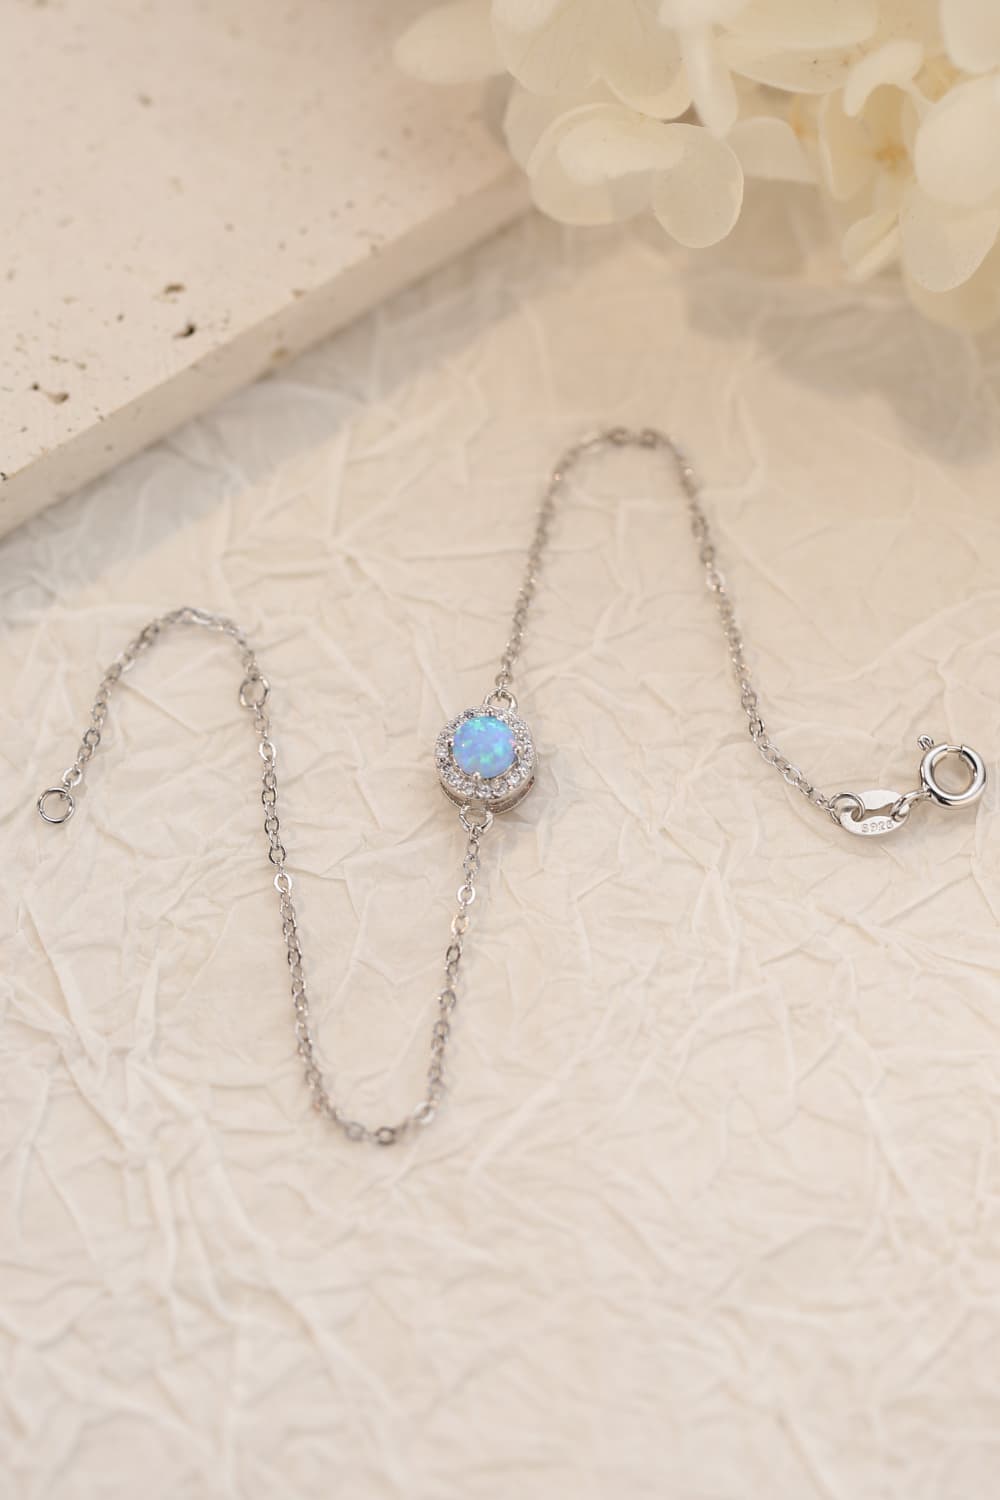 Love You Too Much Opal Bracelet - Women’s Jewelry - Bracelets - 3 - 2024